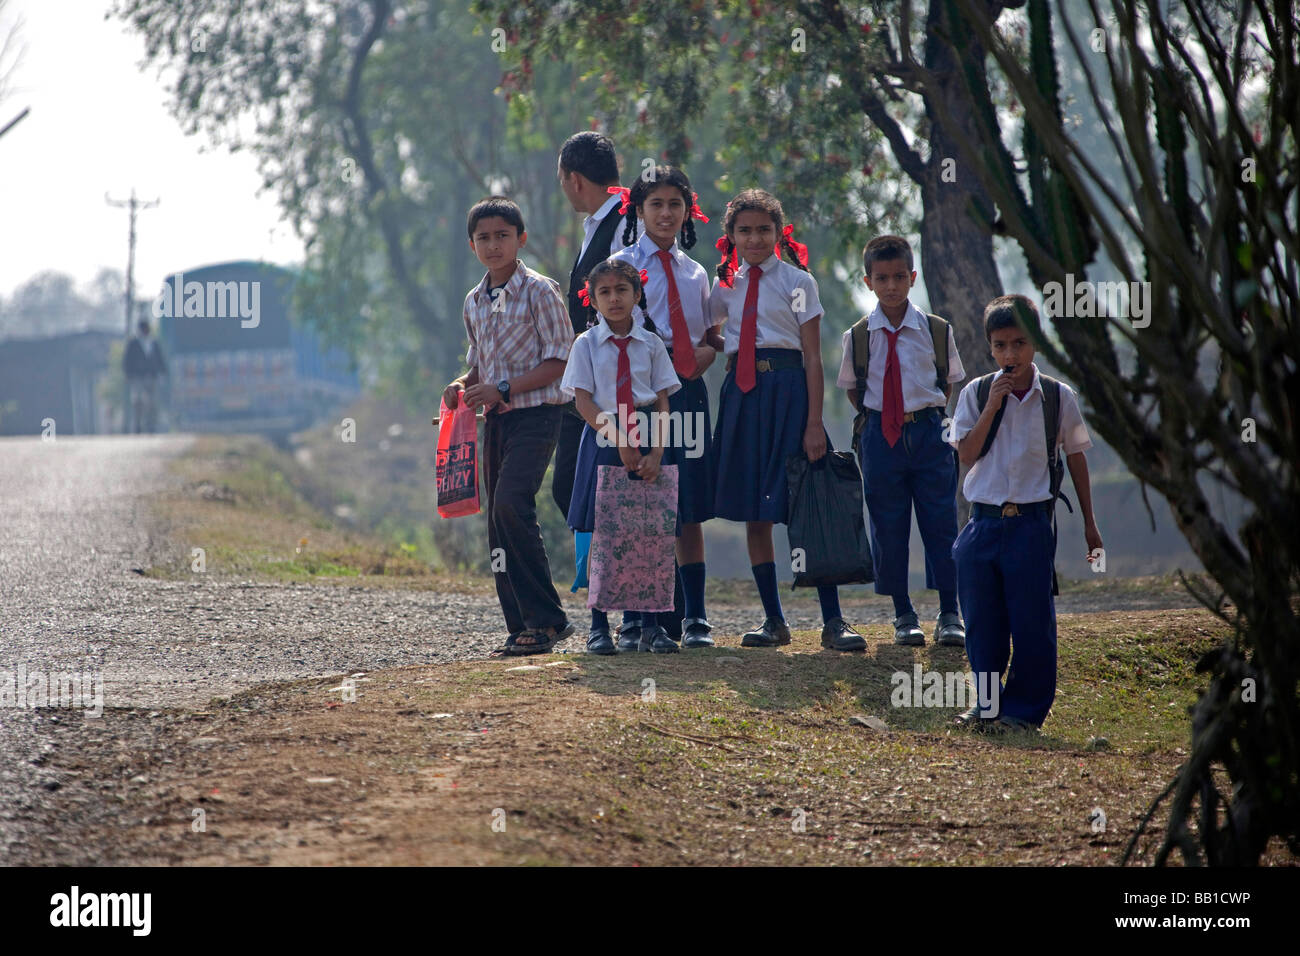 Les enfants de l'école aller à l'école dans les régions rurales du Népal Katmandou à l'arrêt de bus Banque D'Images